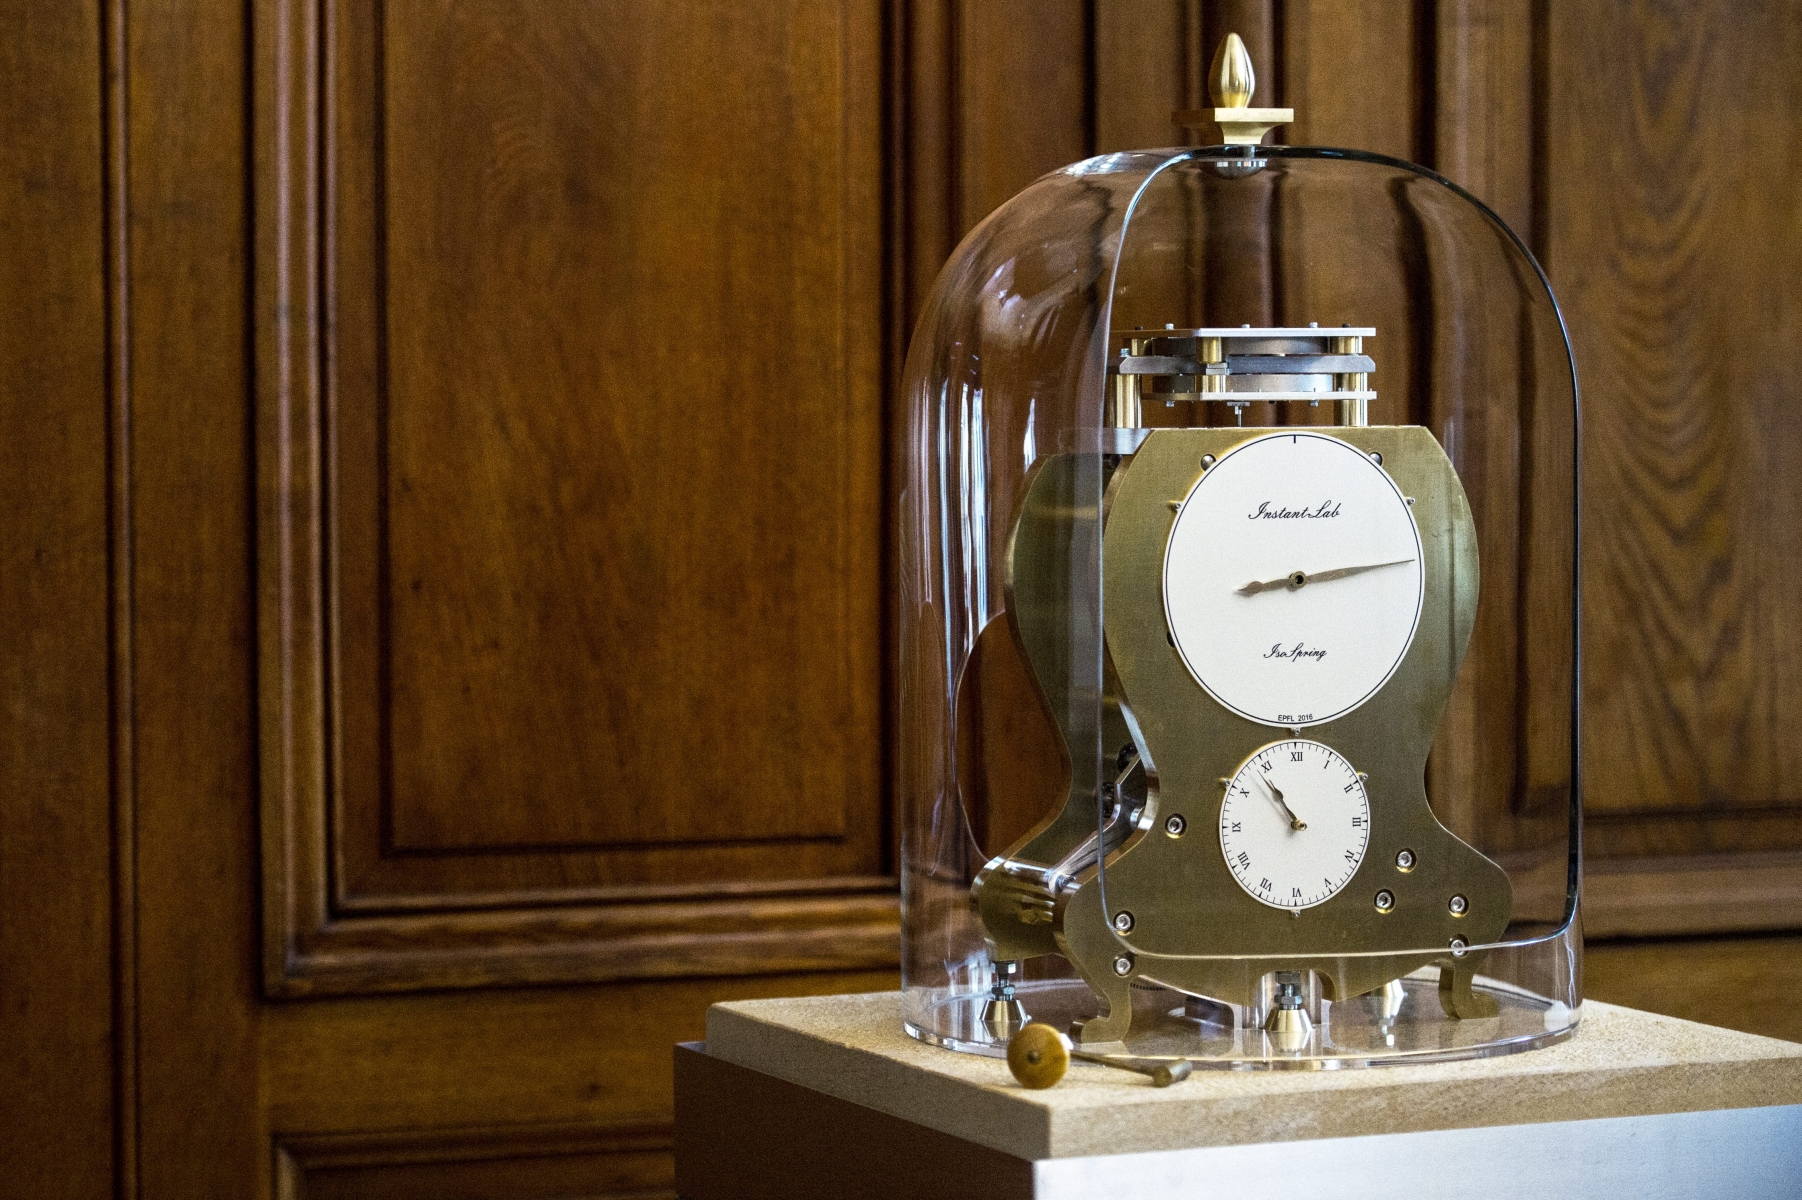 Le premier prototype de pendule comprenant le mouvement Isospring (visible en haut de l'horloge).